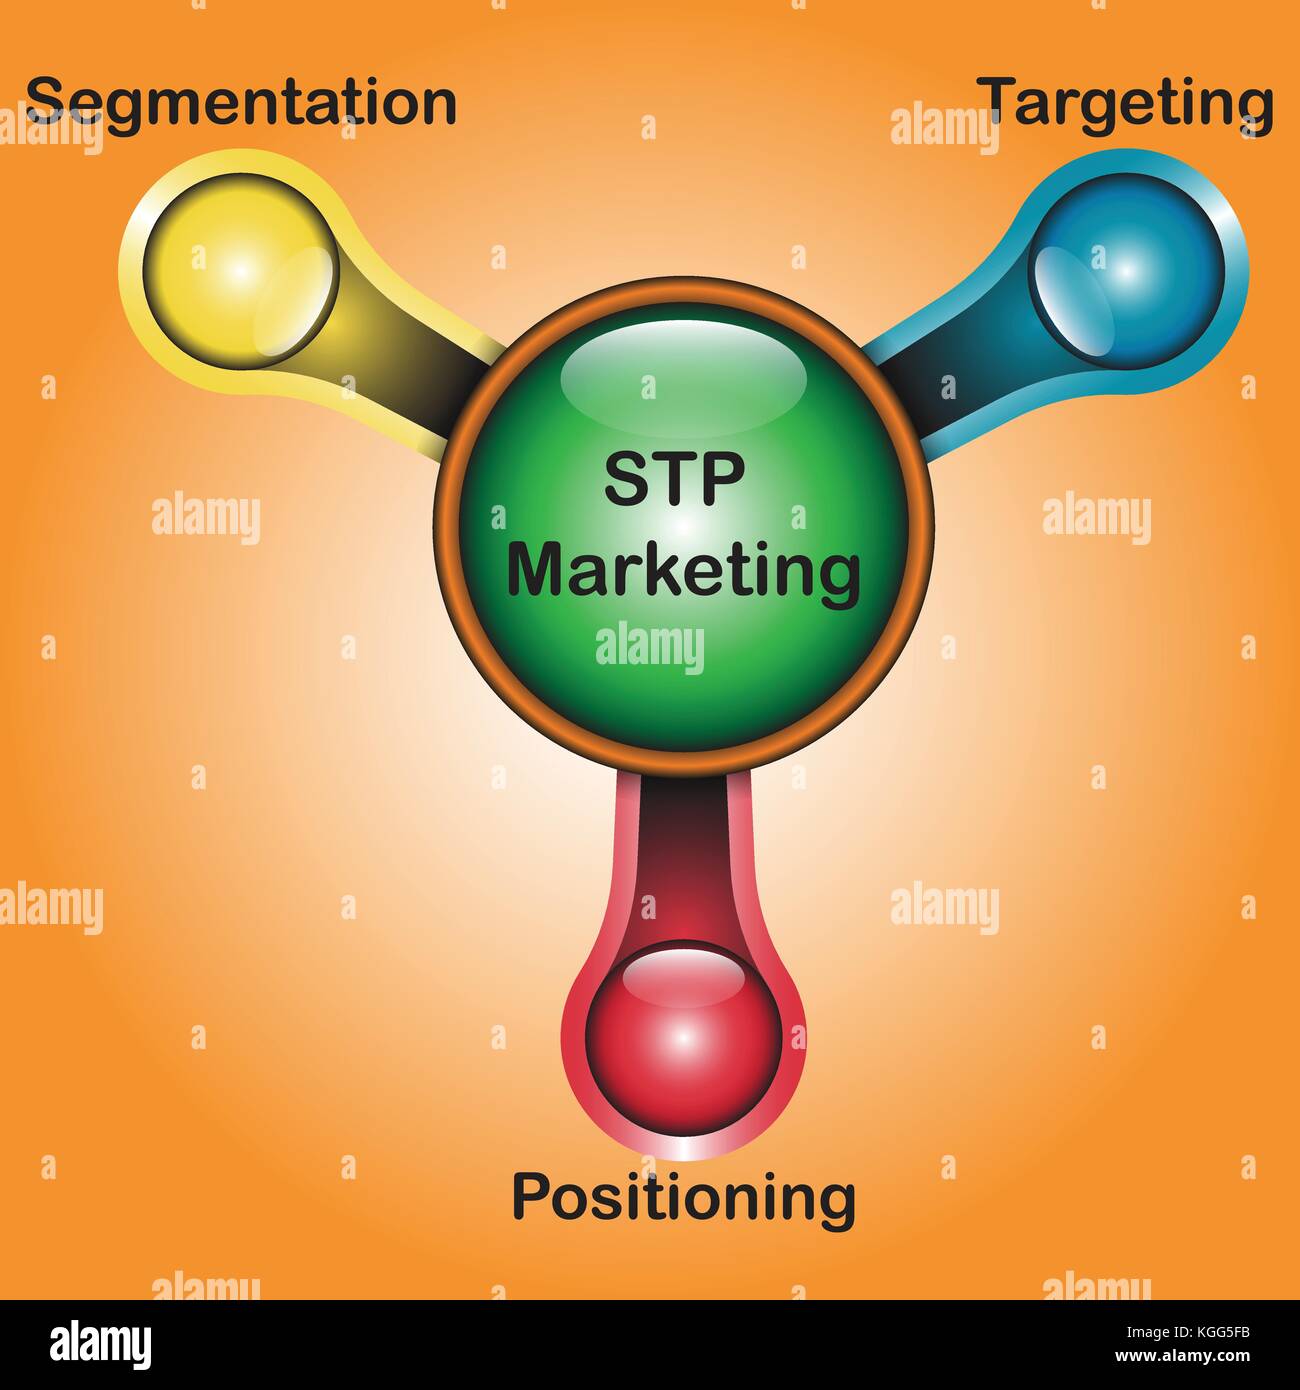 Plan d'illustration vectorielle et le modèle de schéma de segmentation marketing stp signifie, ciblage, positionnement et conçu comme ayant la même apparence d'un robinet d'eau Illustration de Vecteur